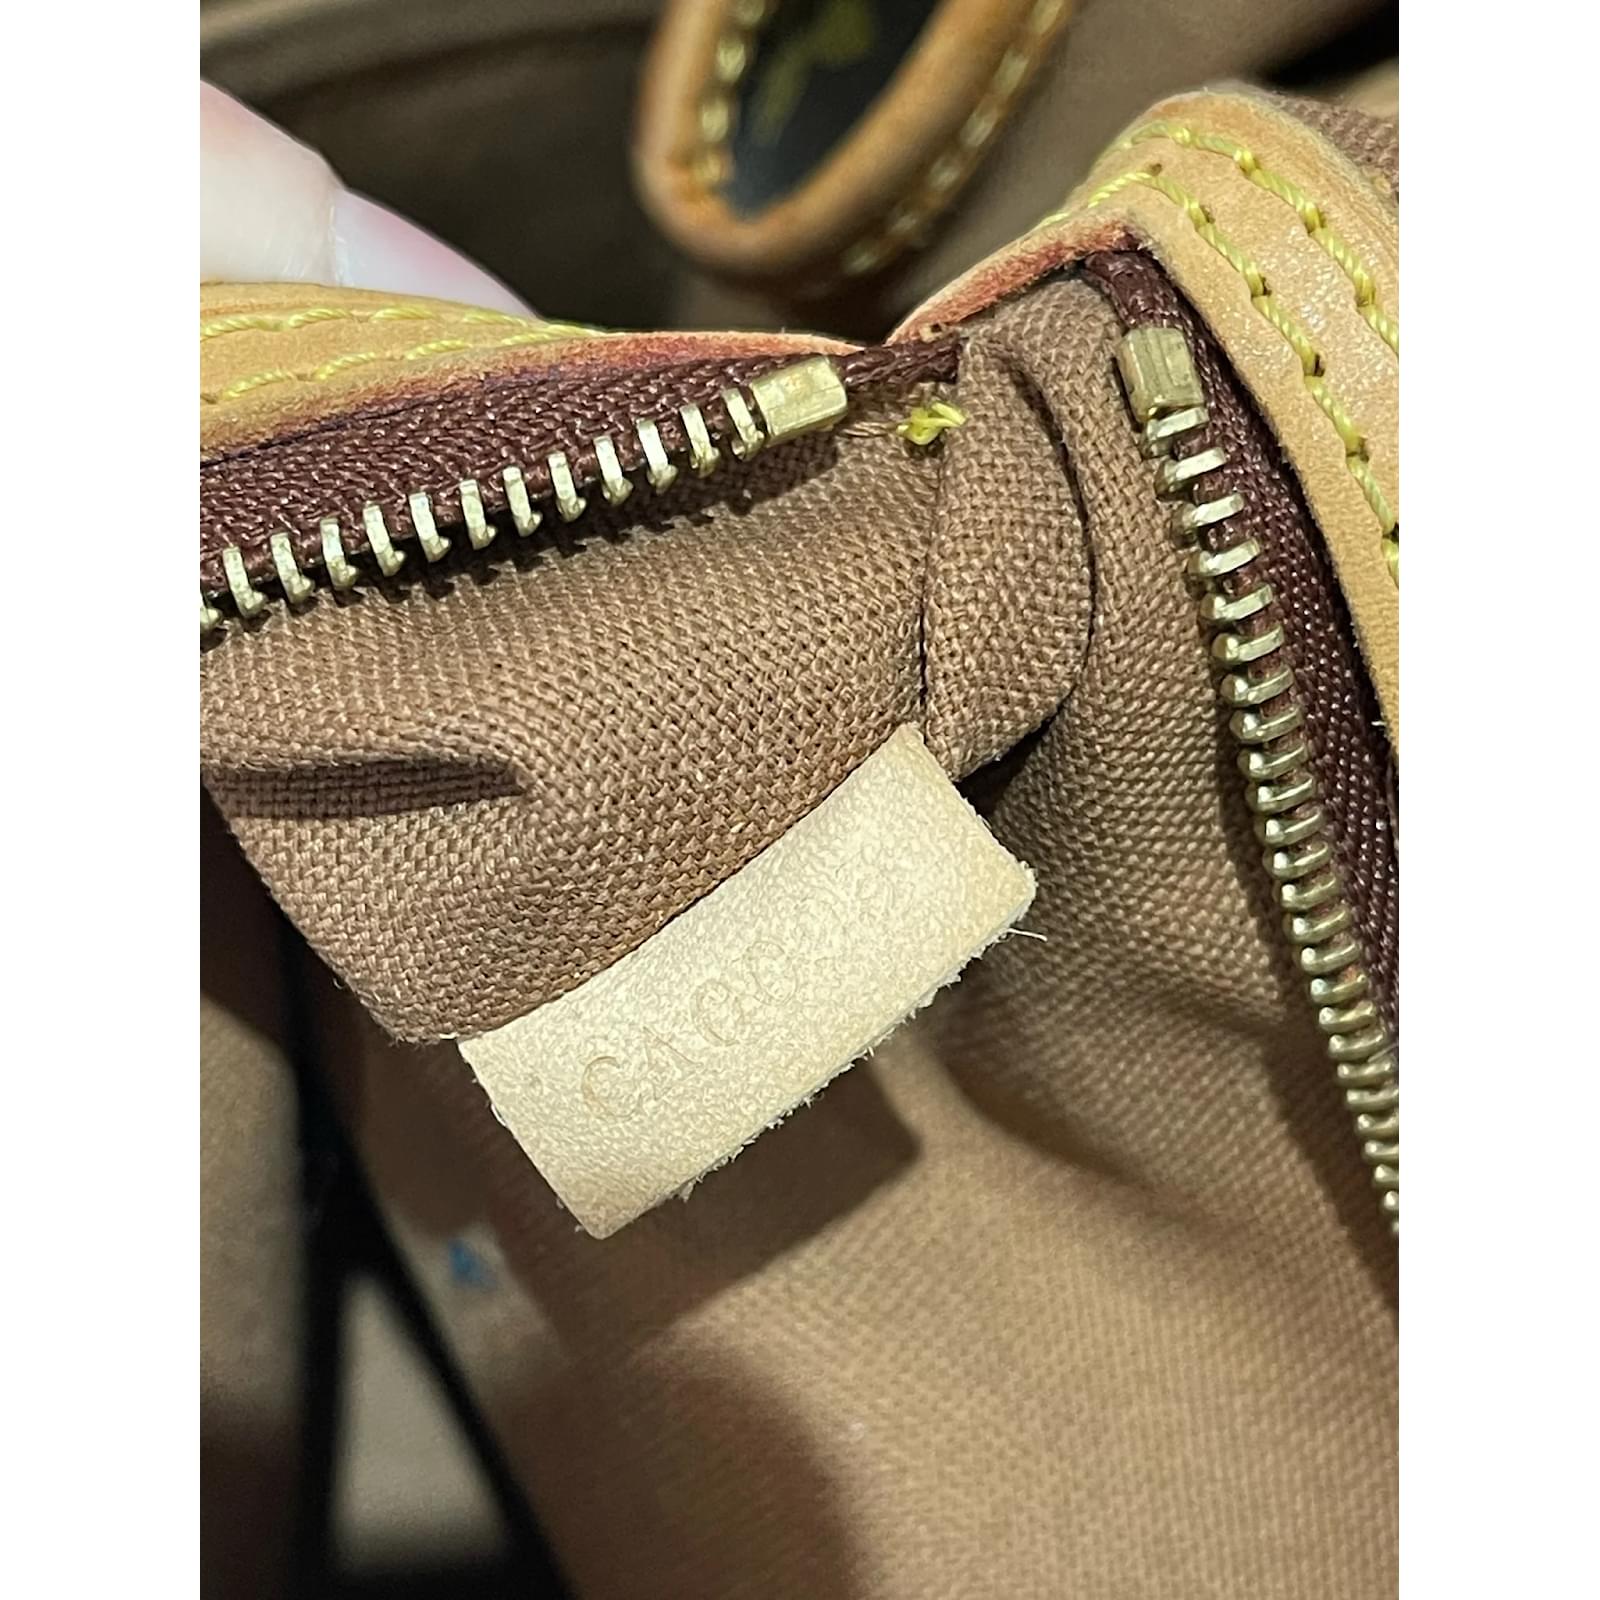 Odéon cloth handbag Louis Vuitton Brown in Cloth - 29716876